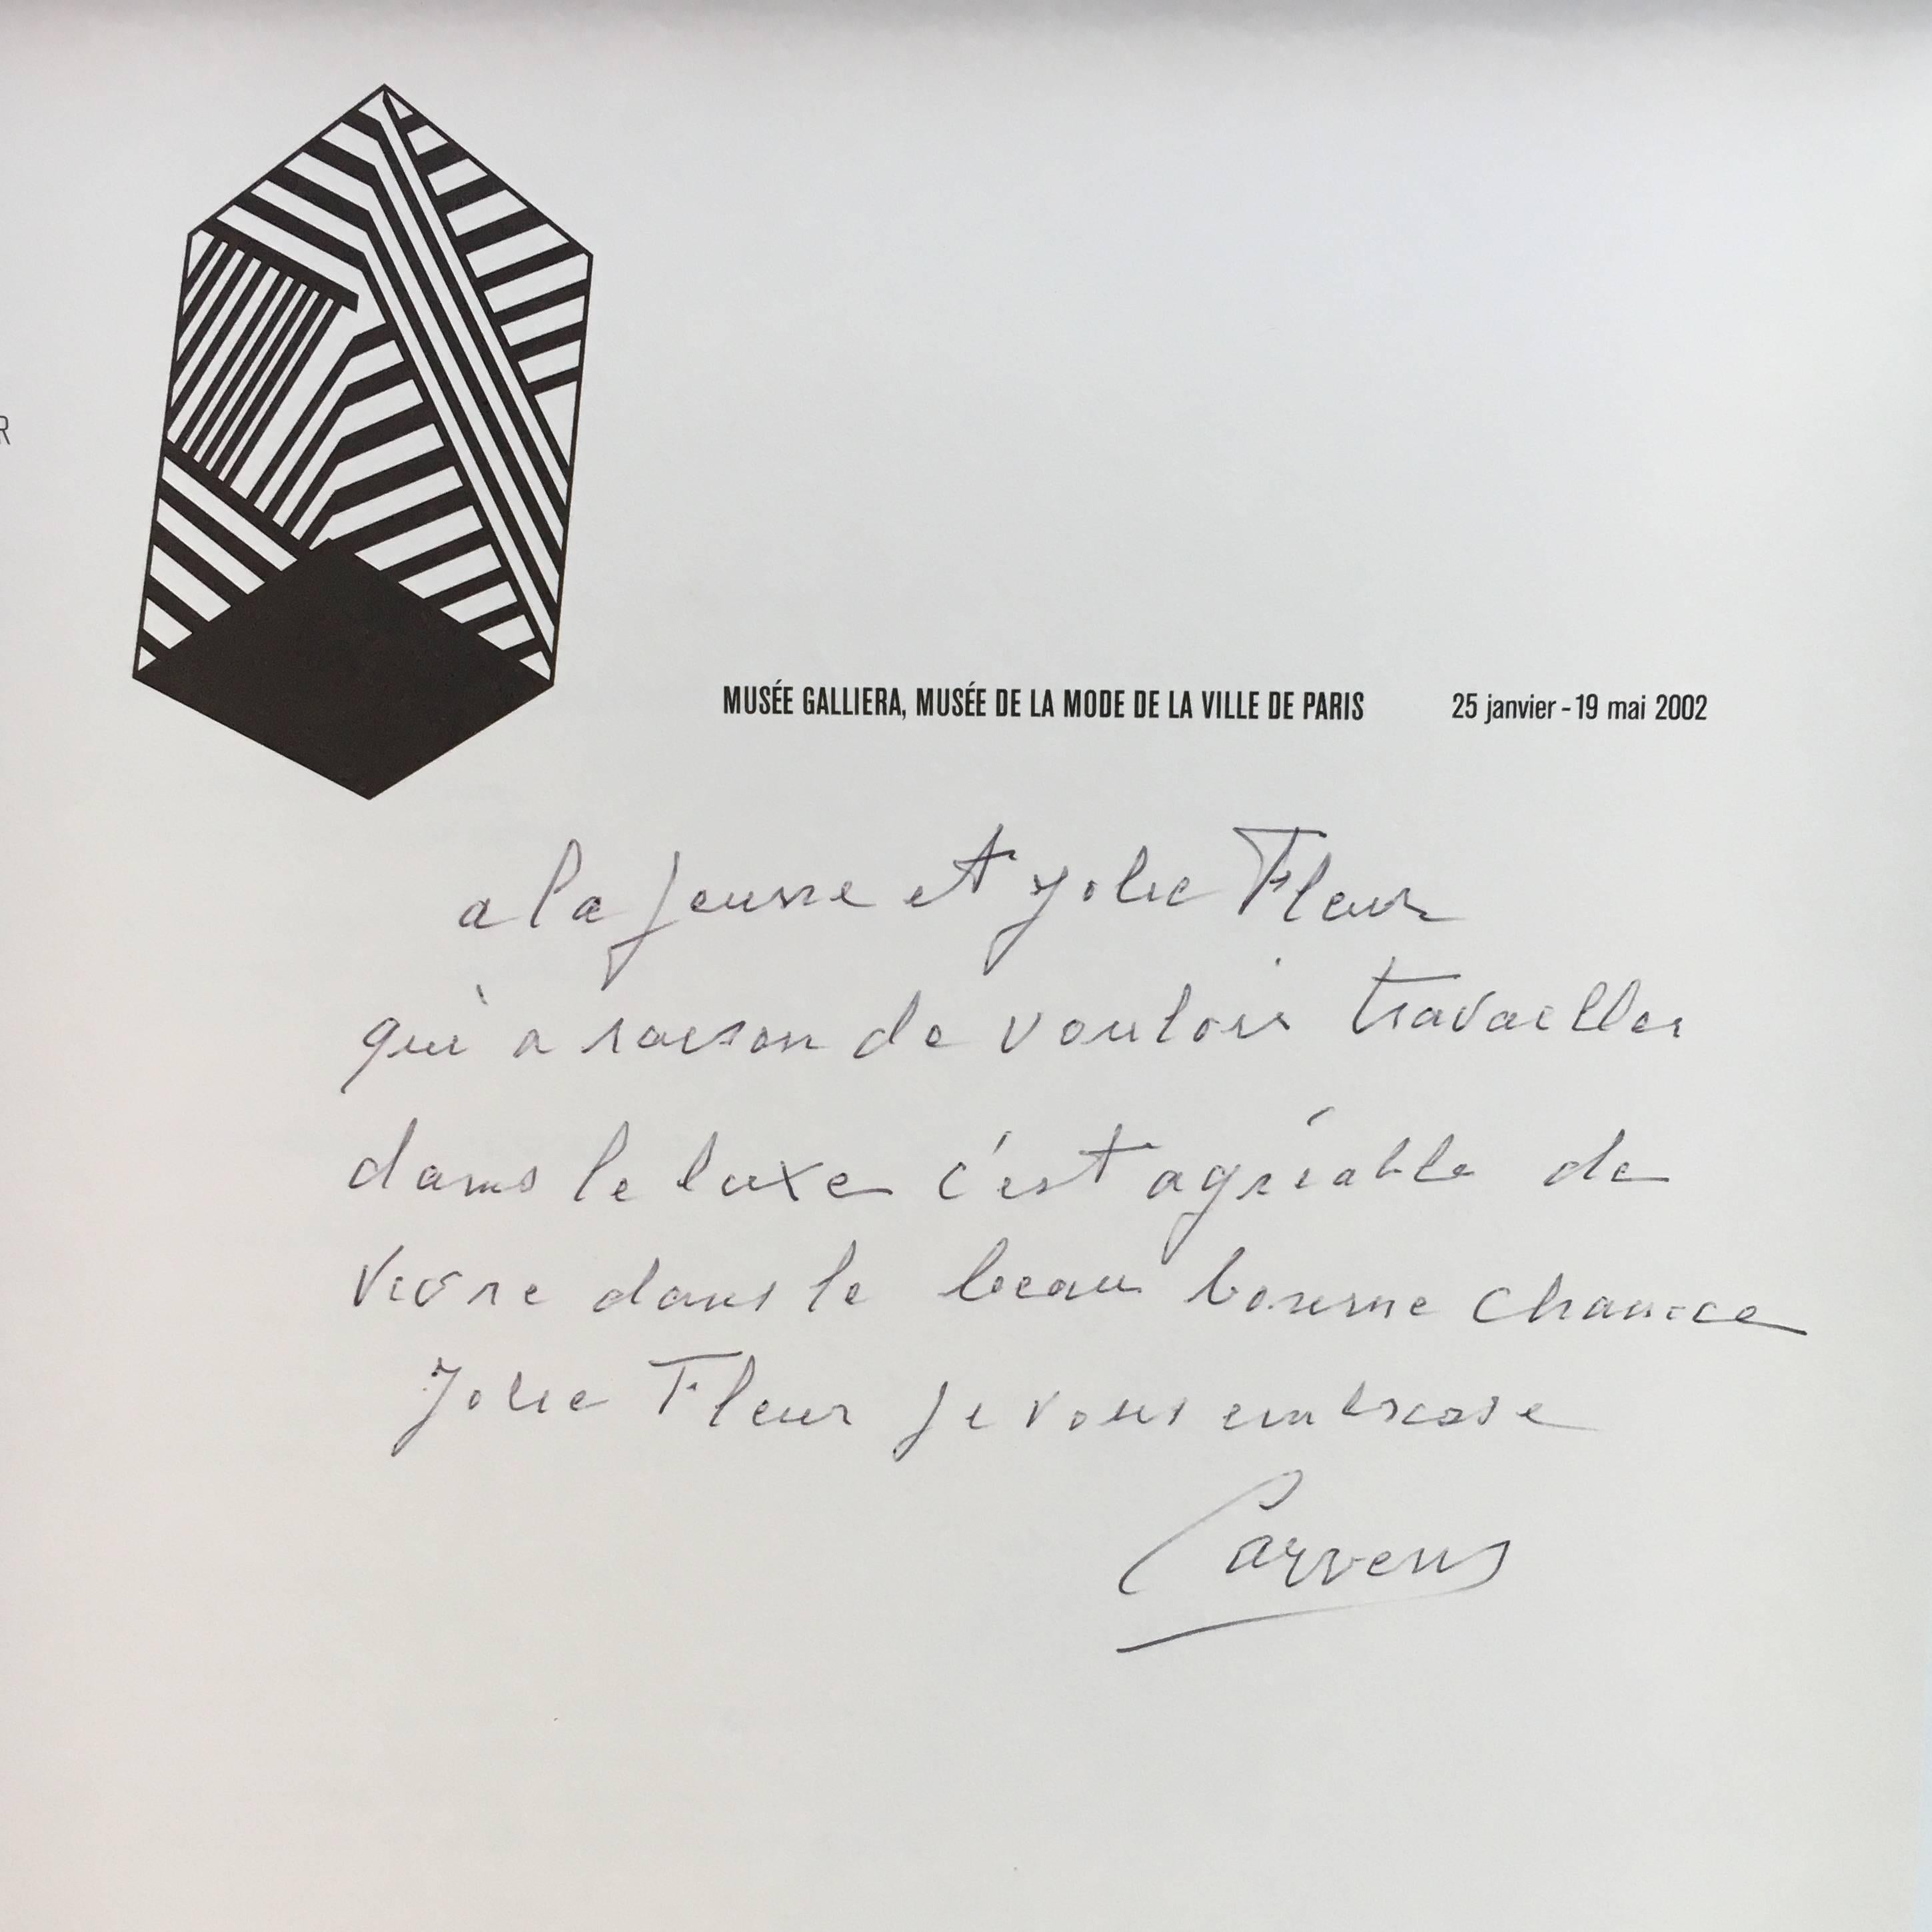 Erste Ausgabe, herausgegeben von Paris-Muse'es association, 2002.

Signiertes Exemplar von Madame Carven an einen Freund.

Ein Katalog für eine Ausstellung im Musee Galleria im Jahr 2002, die die Geschichte des Modehauses Carven nachzeichnet. Es